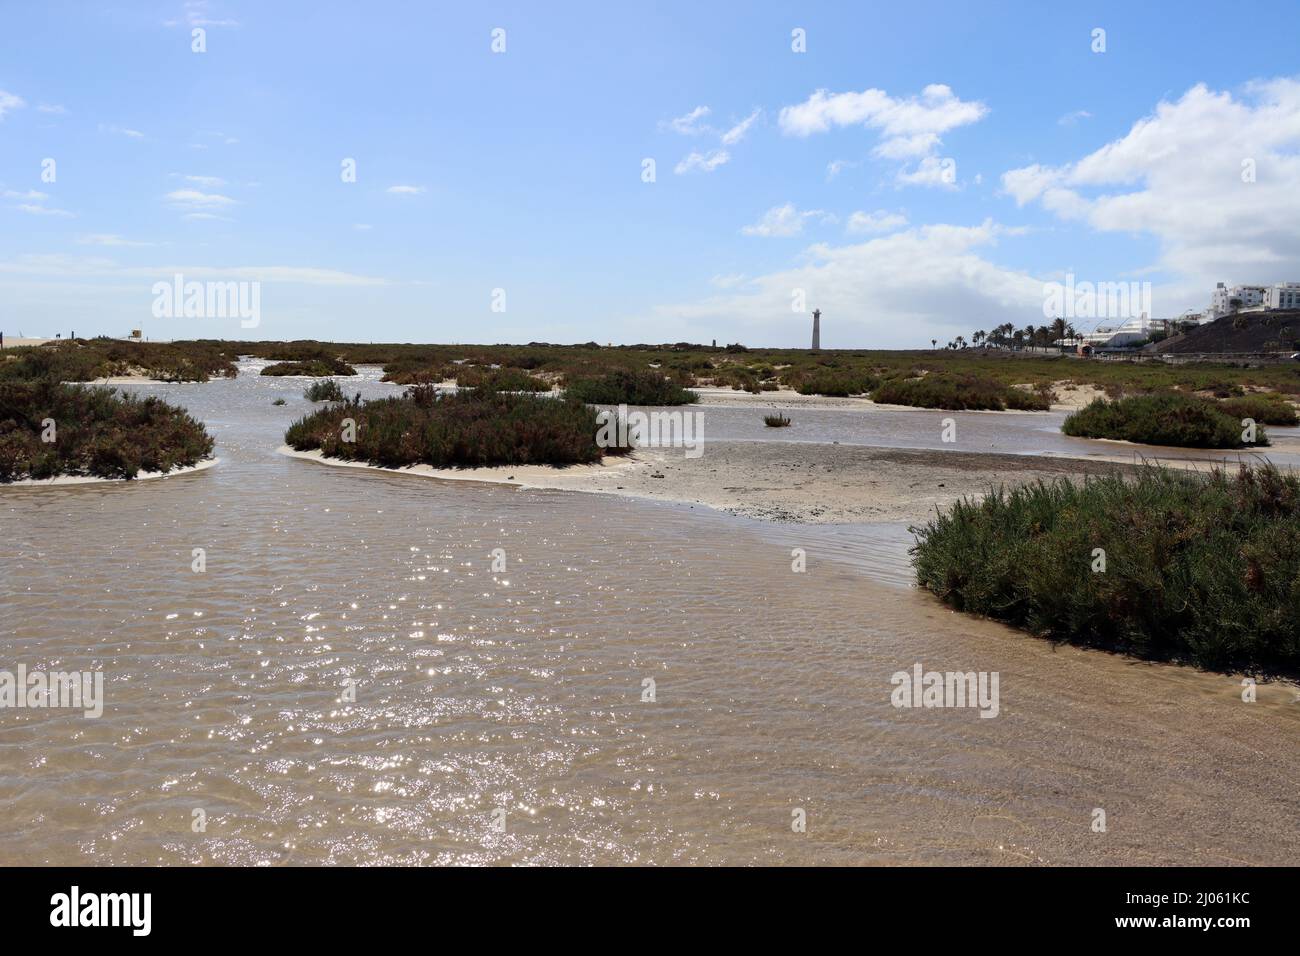 Saladar de Jandía, ein Feuchtgebiet und Naturschutzgebiet an der Playa del Matorral, das zeitweise von Meerwasser überflutet wird, Fuerteventura, Span Stock Photo